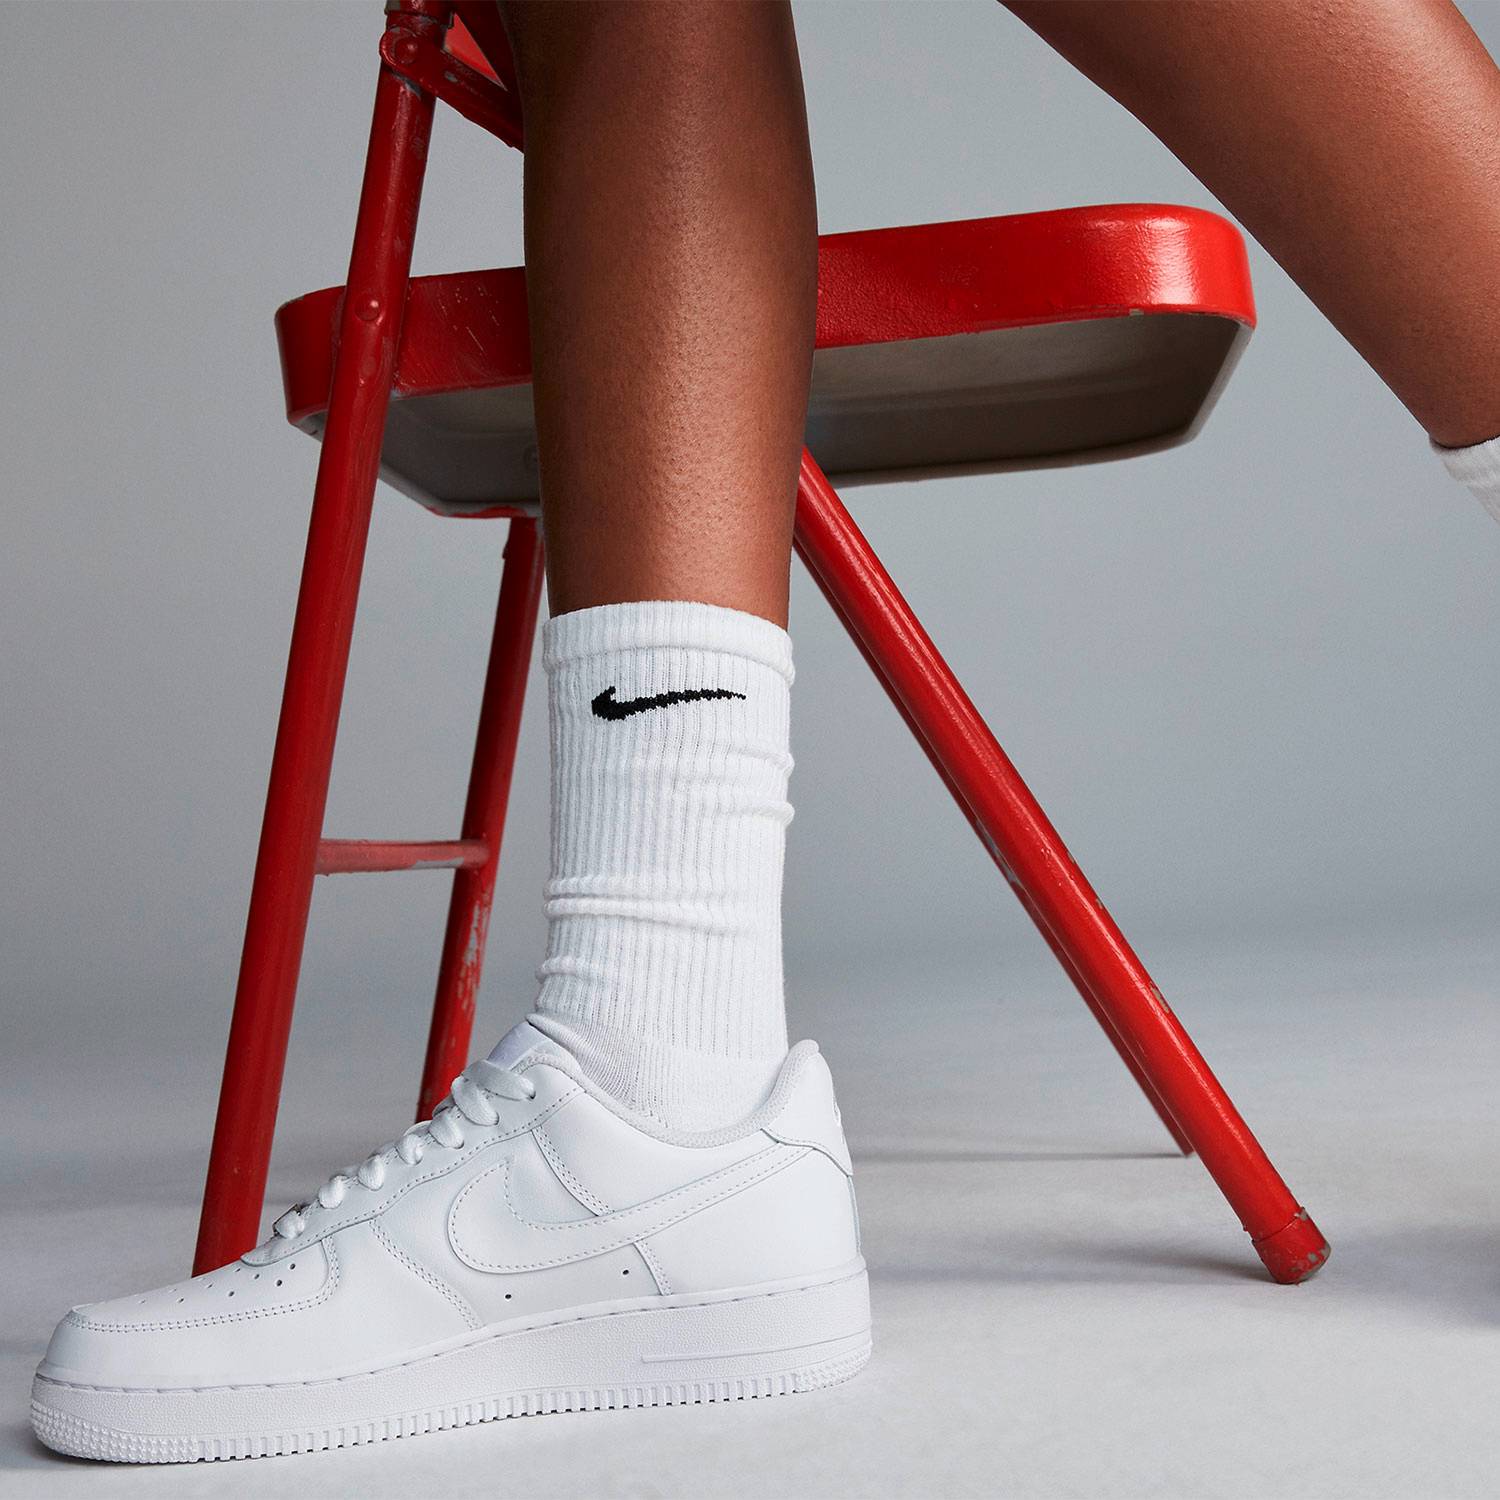 Nike Air Force 1 High Top  Zapatos gratis nike, Zapatos deportivos de  moda, Zapatillas nike lindas